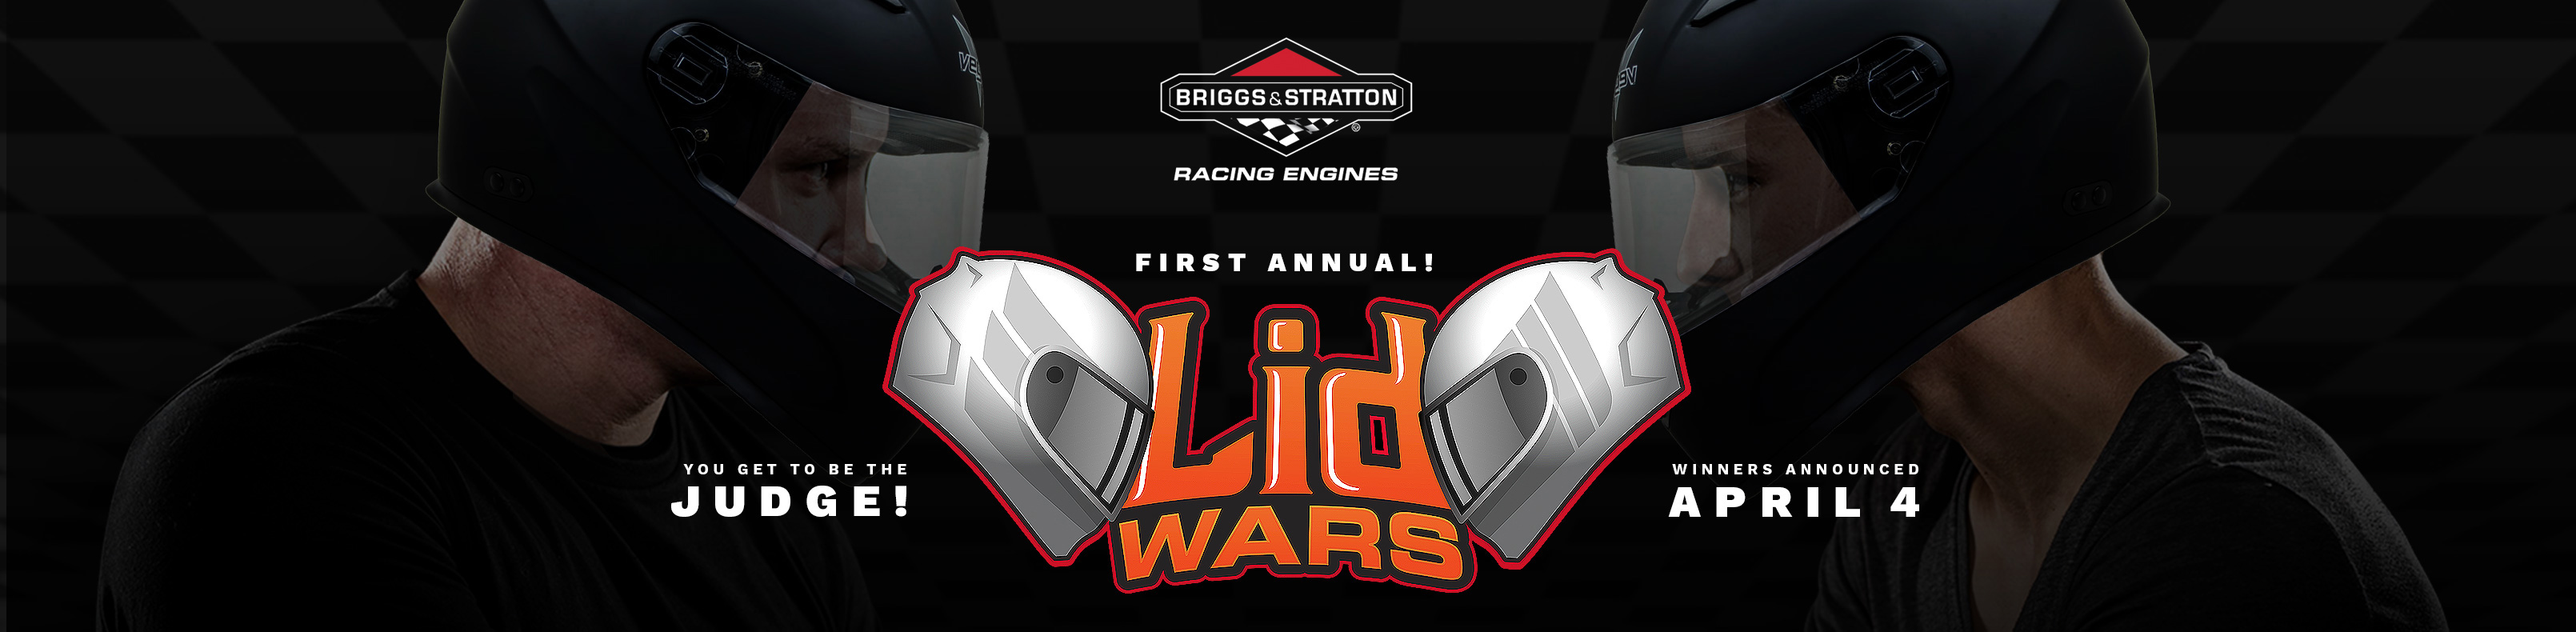 Lid Wars by Briggs Racing